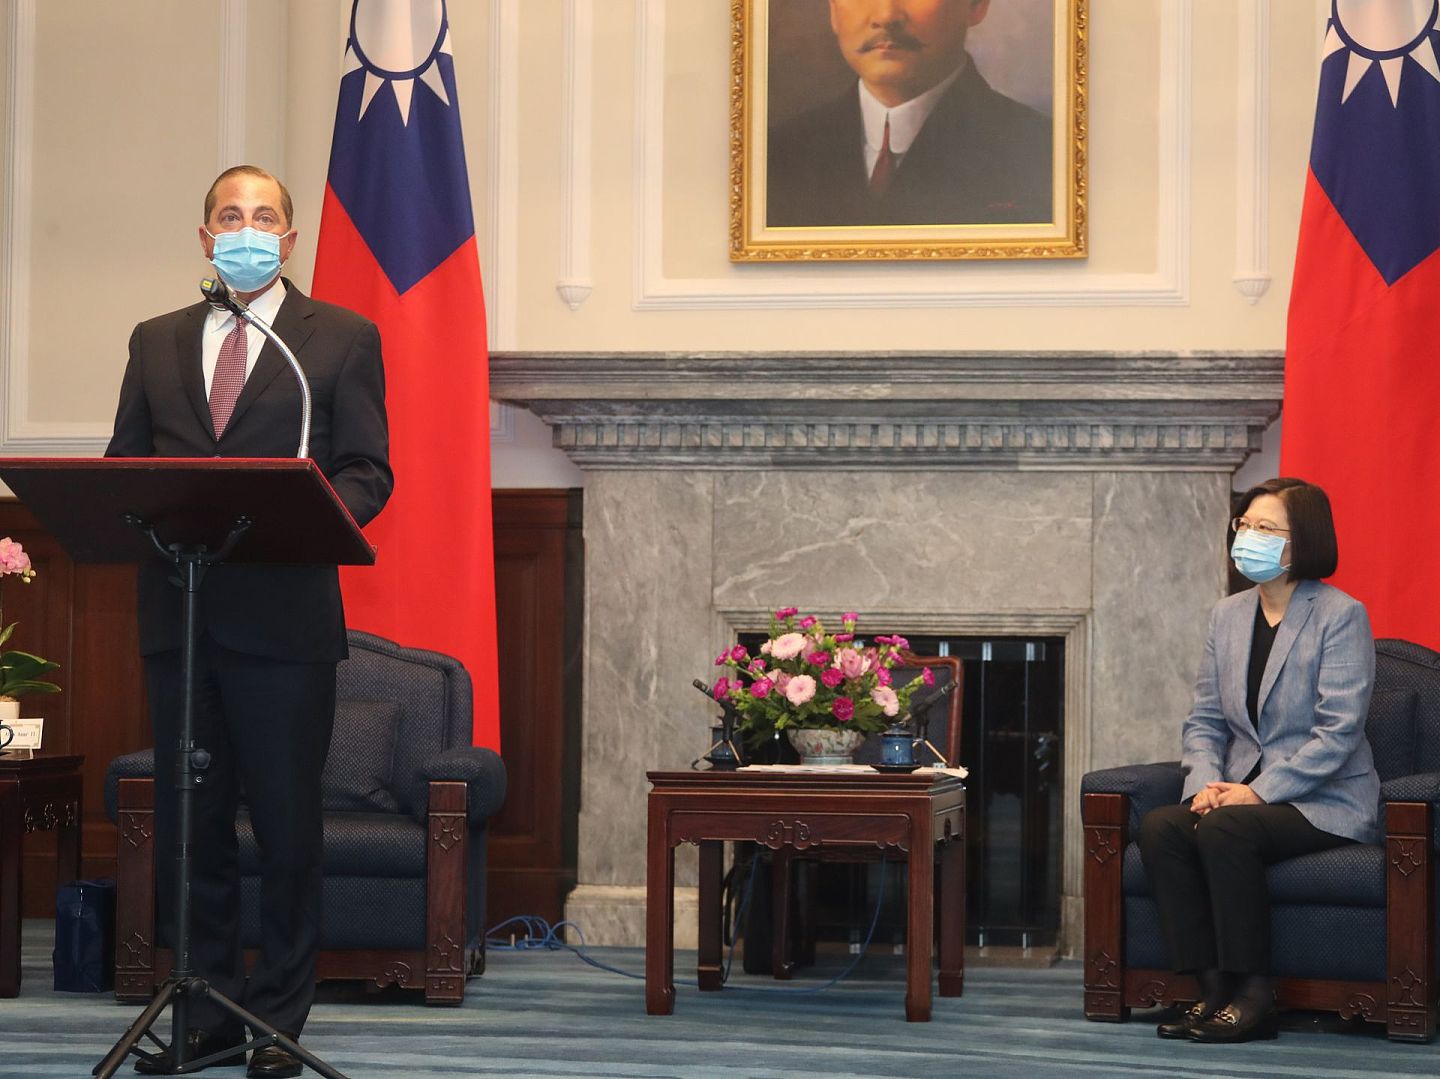 美台关系近来不断升温。美国卫生部长阿扎（Alex Azar）8月份访问了台湾。8月10日，阿扎获得台湾领导人蔡英文接见。（中央社）